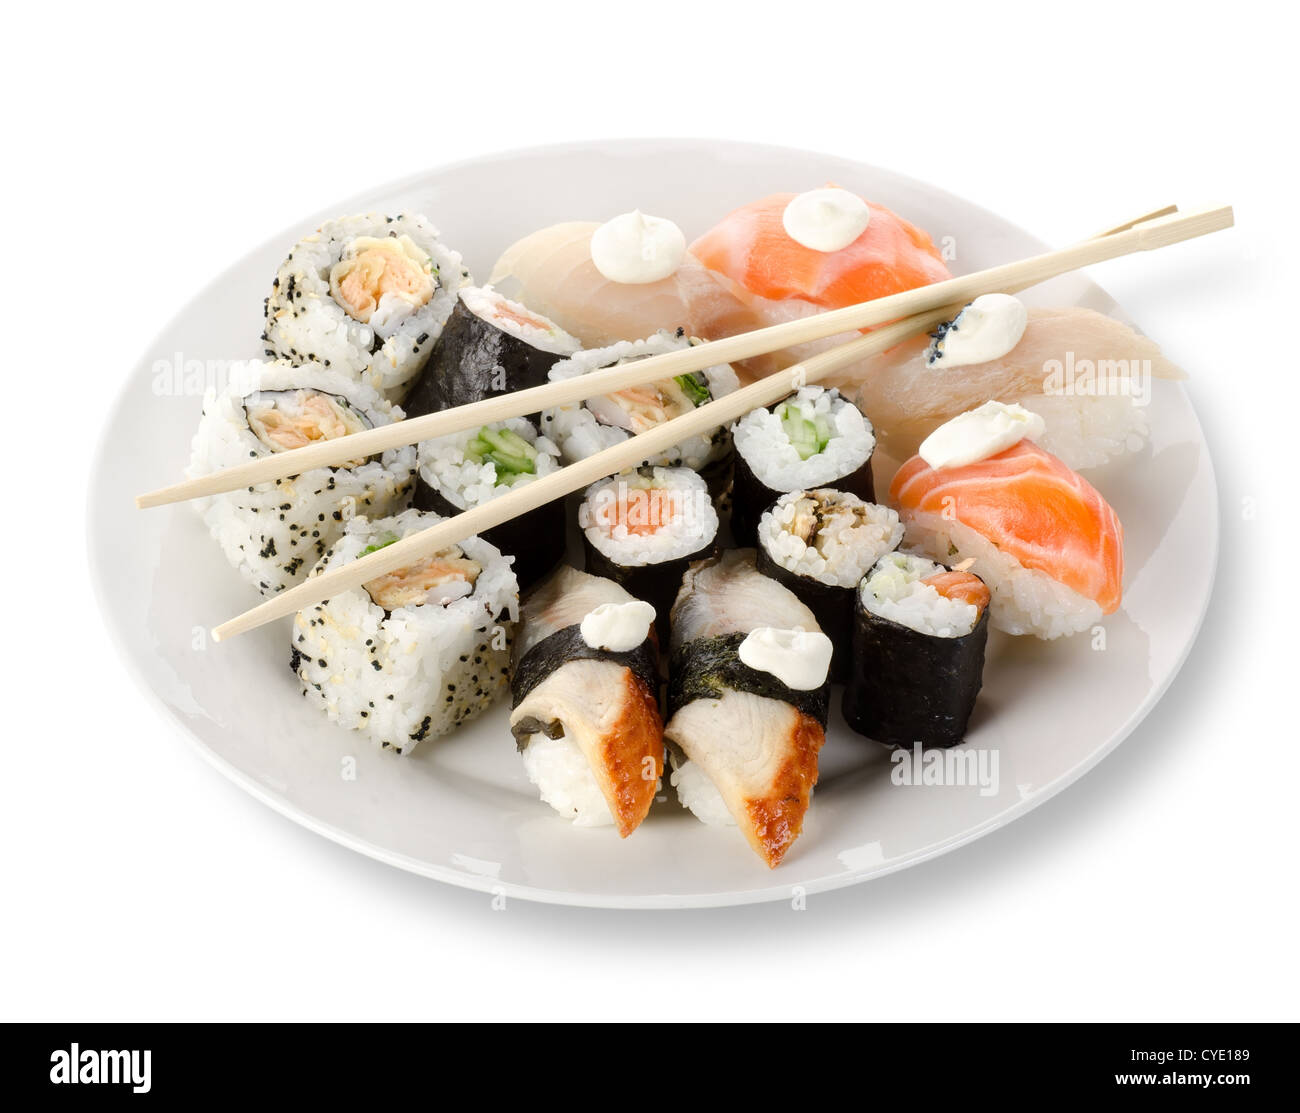 Des sushis et rouleaux dans une assiette avec des bâtons isolé sur un fond blanc. Clipping path Banque D'Images